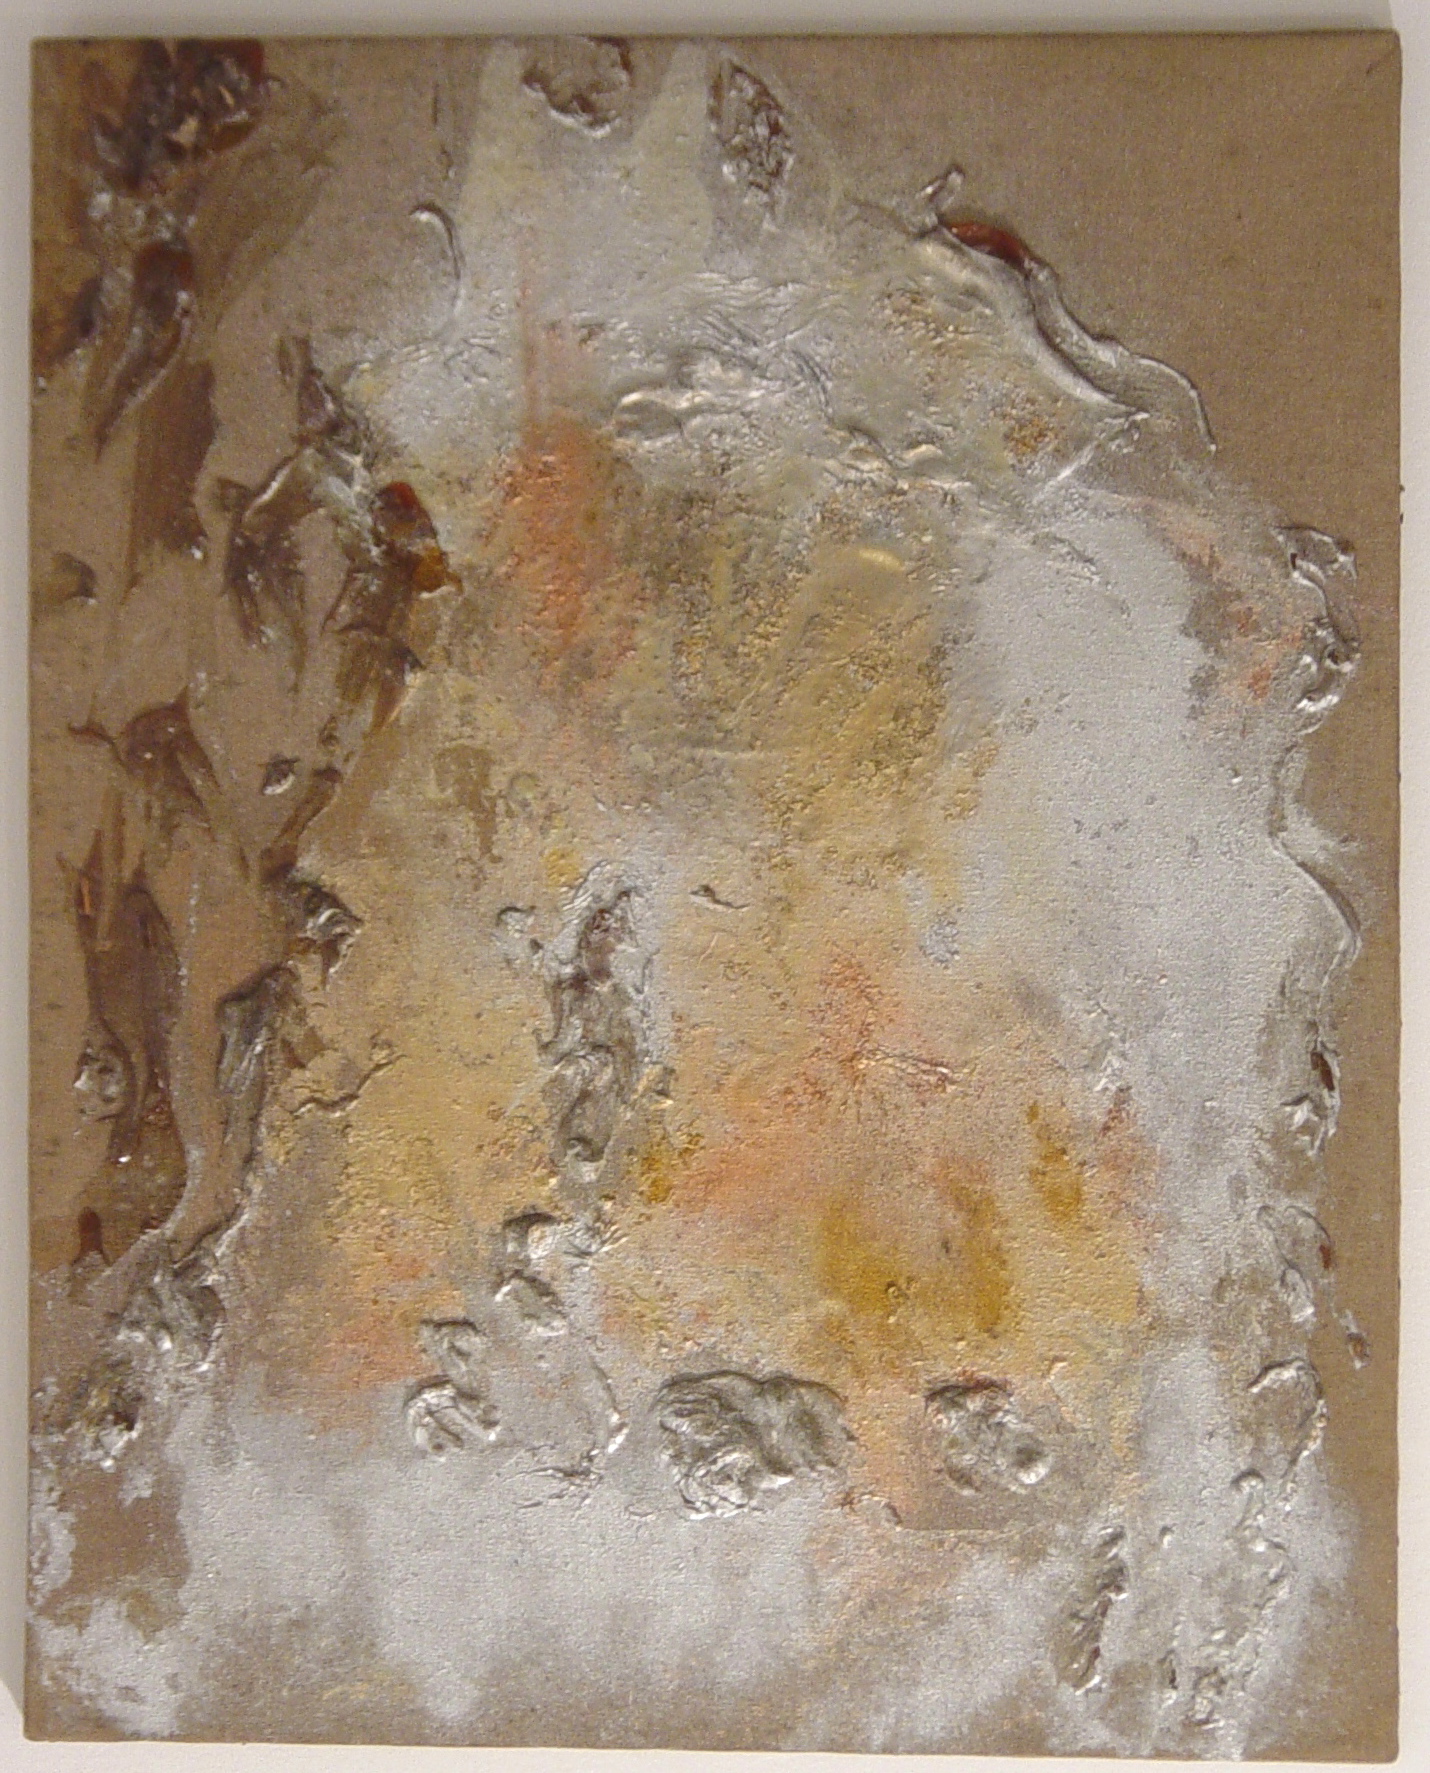 Senza titolo, 1970, colla, polvere di rame e d'argento su tela, 75 x 60 cm